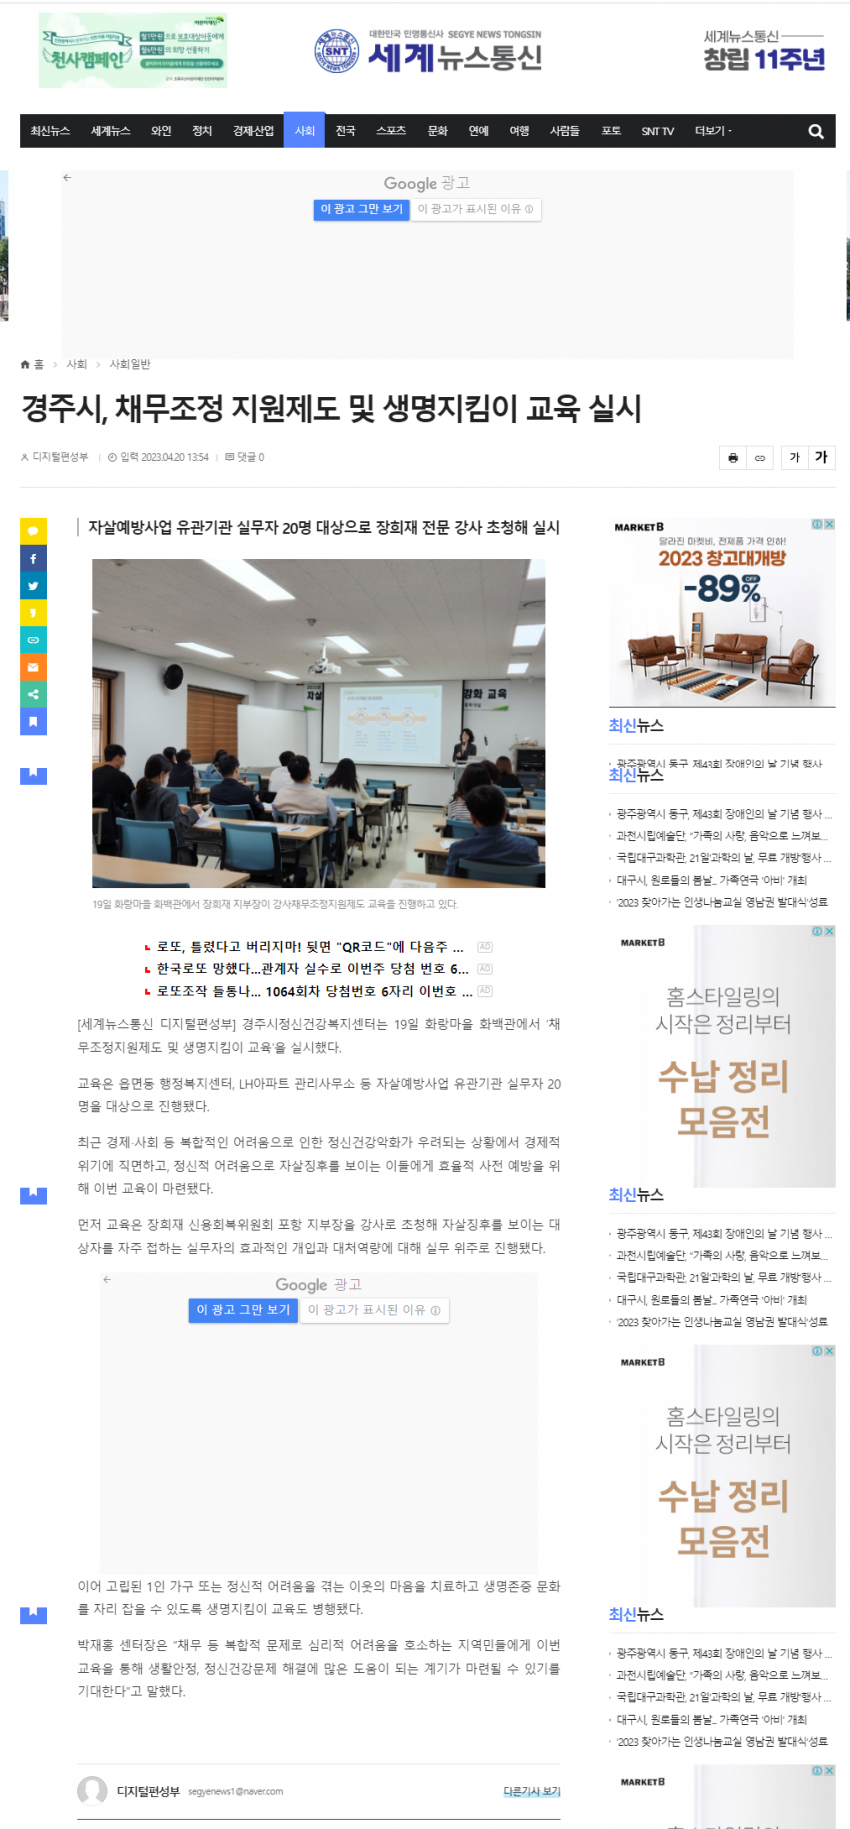 채무조정 지원제도 및 생명지킴이 교육_세계뉴스통신.png